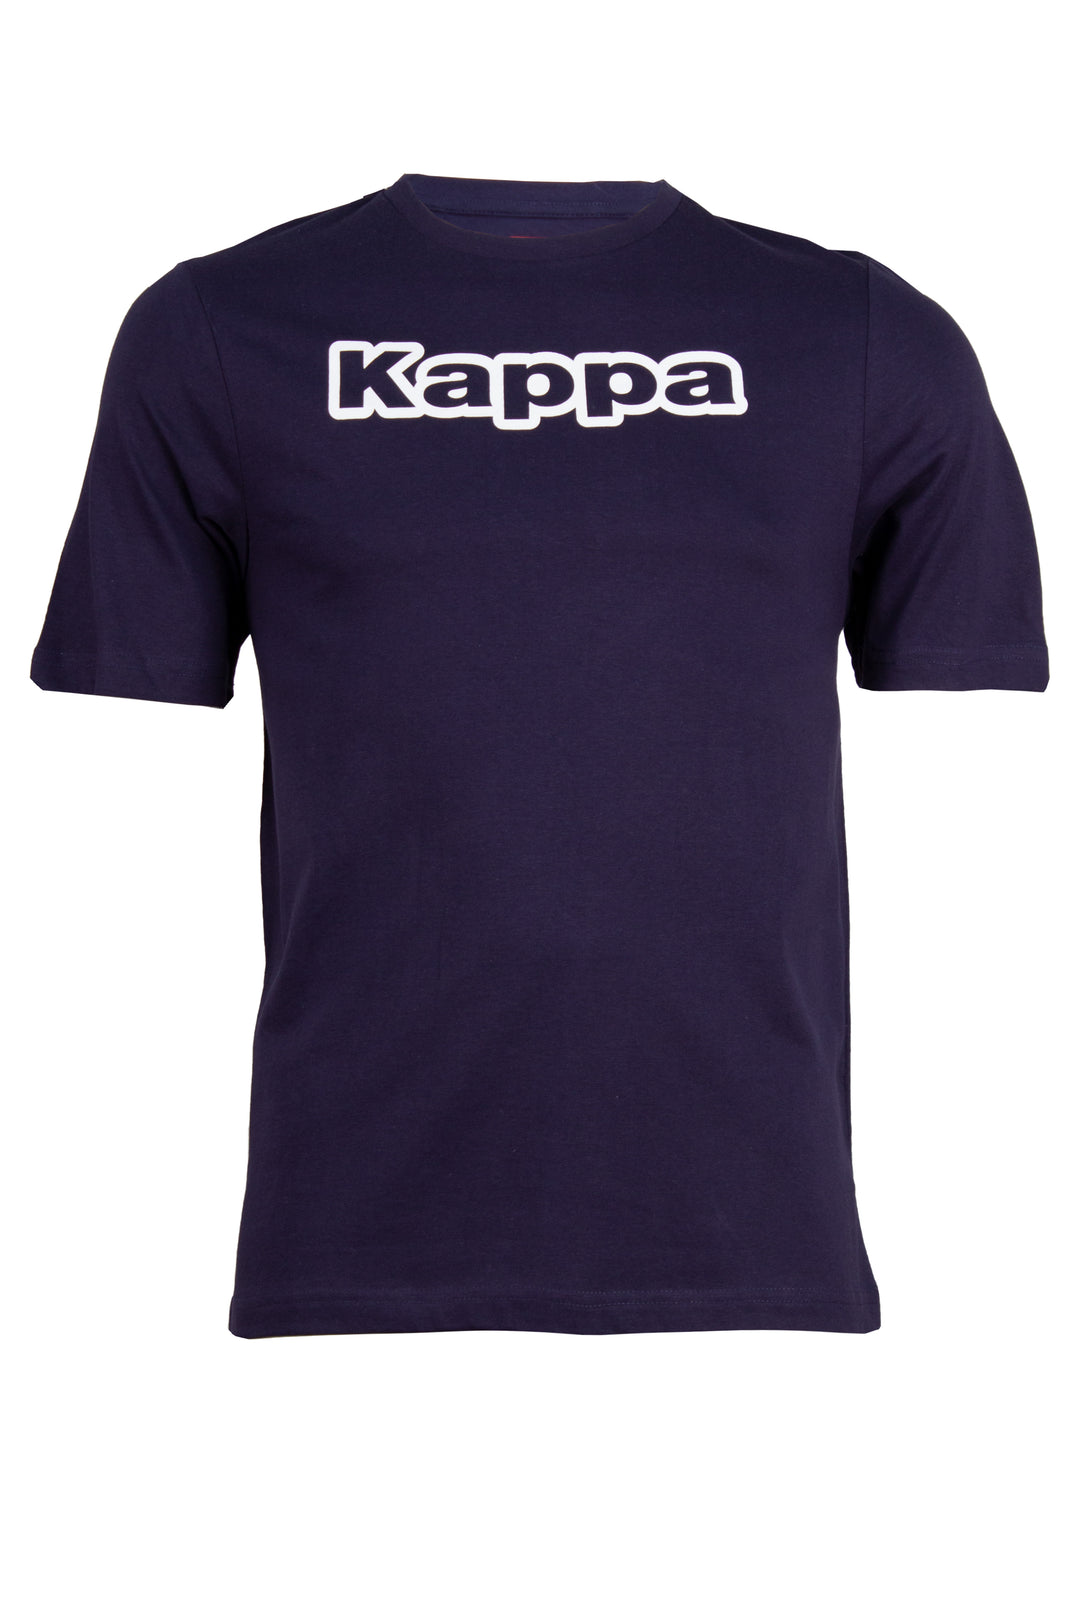 T-shirt Kappa gircollo con stampa sul petto